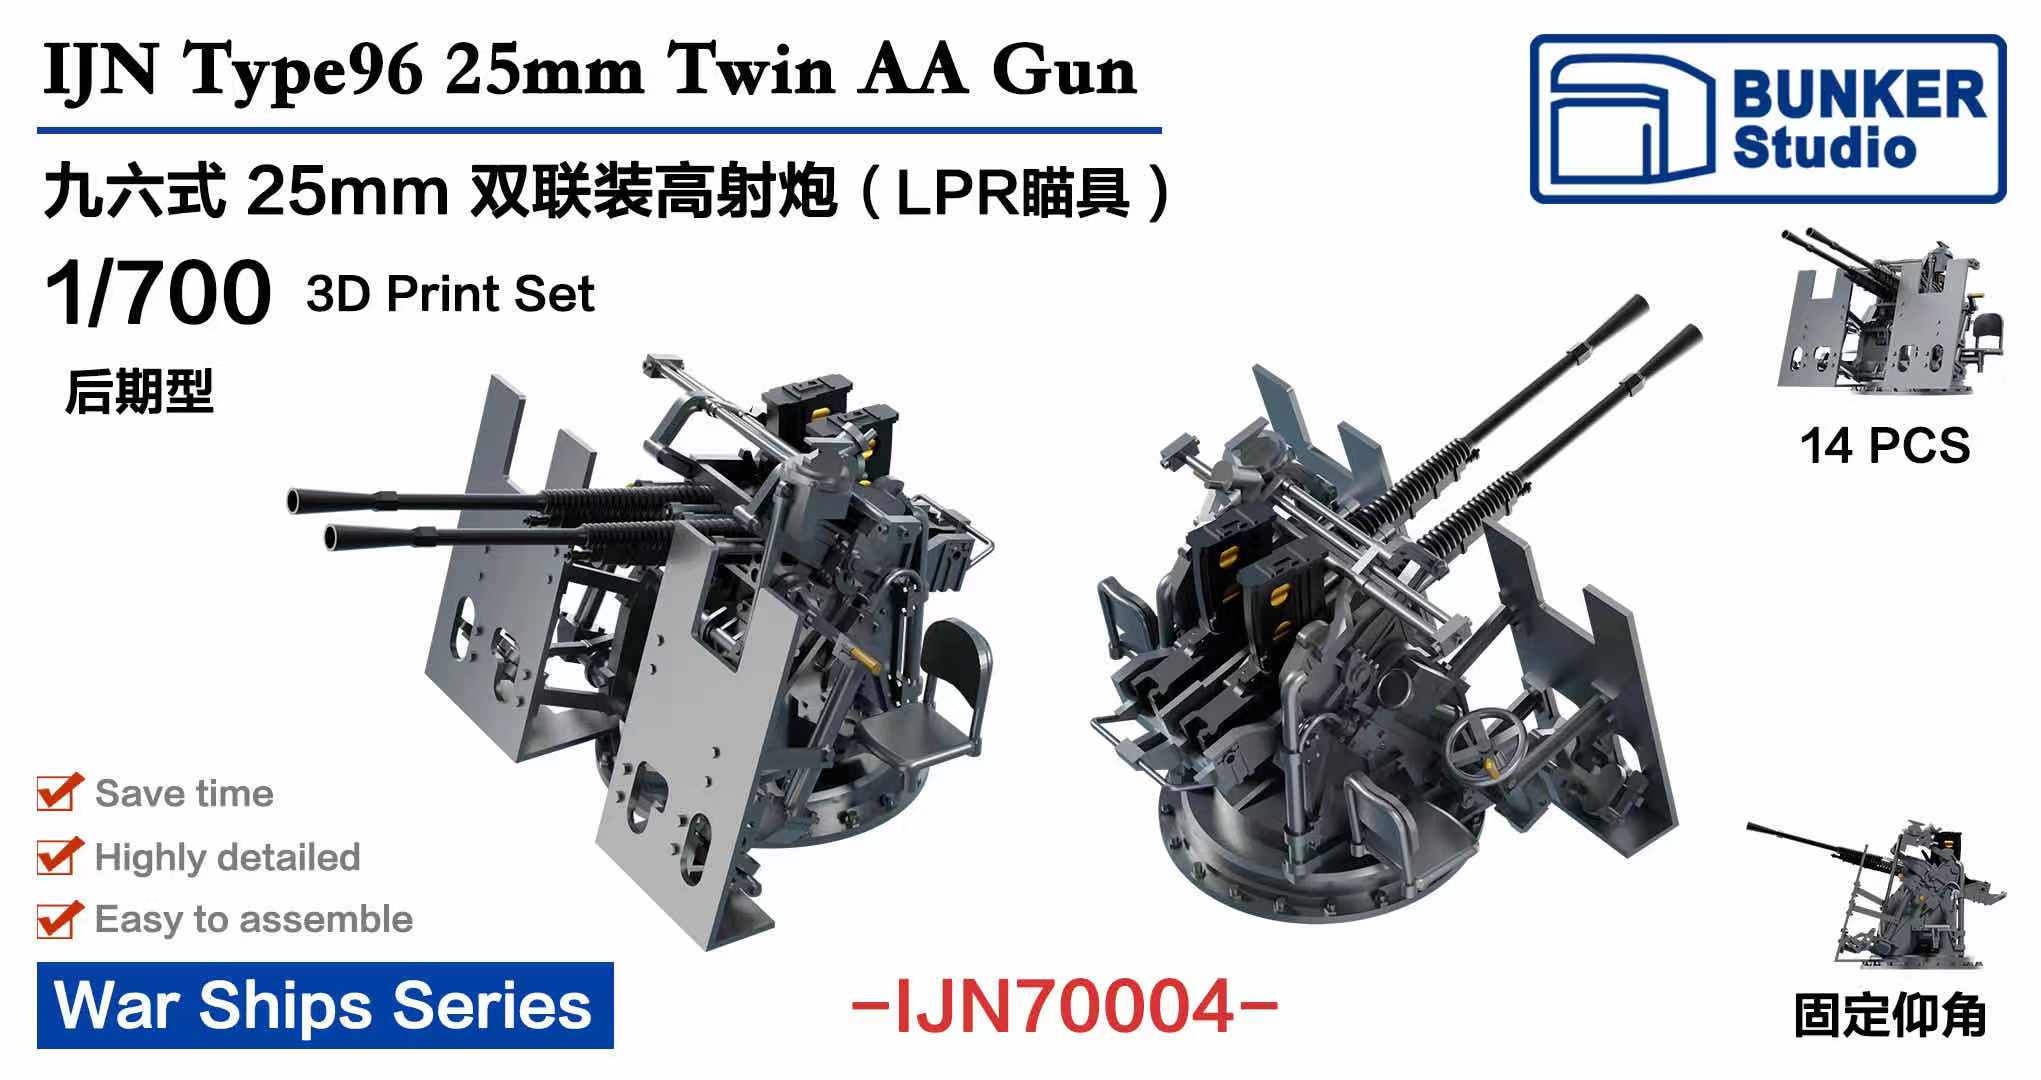 1/700 日本海軍 九六式二十五粍連装機銃 LPR照準器 (後期型)w/防盾